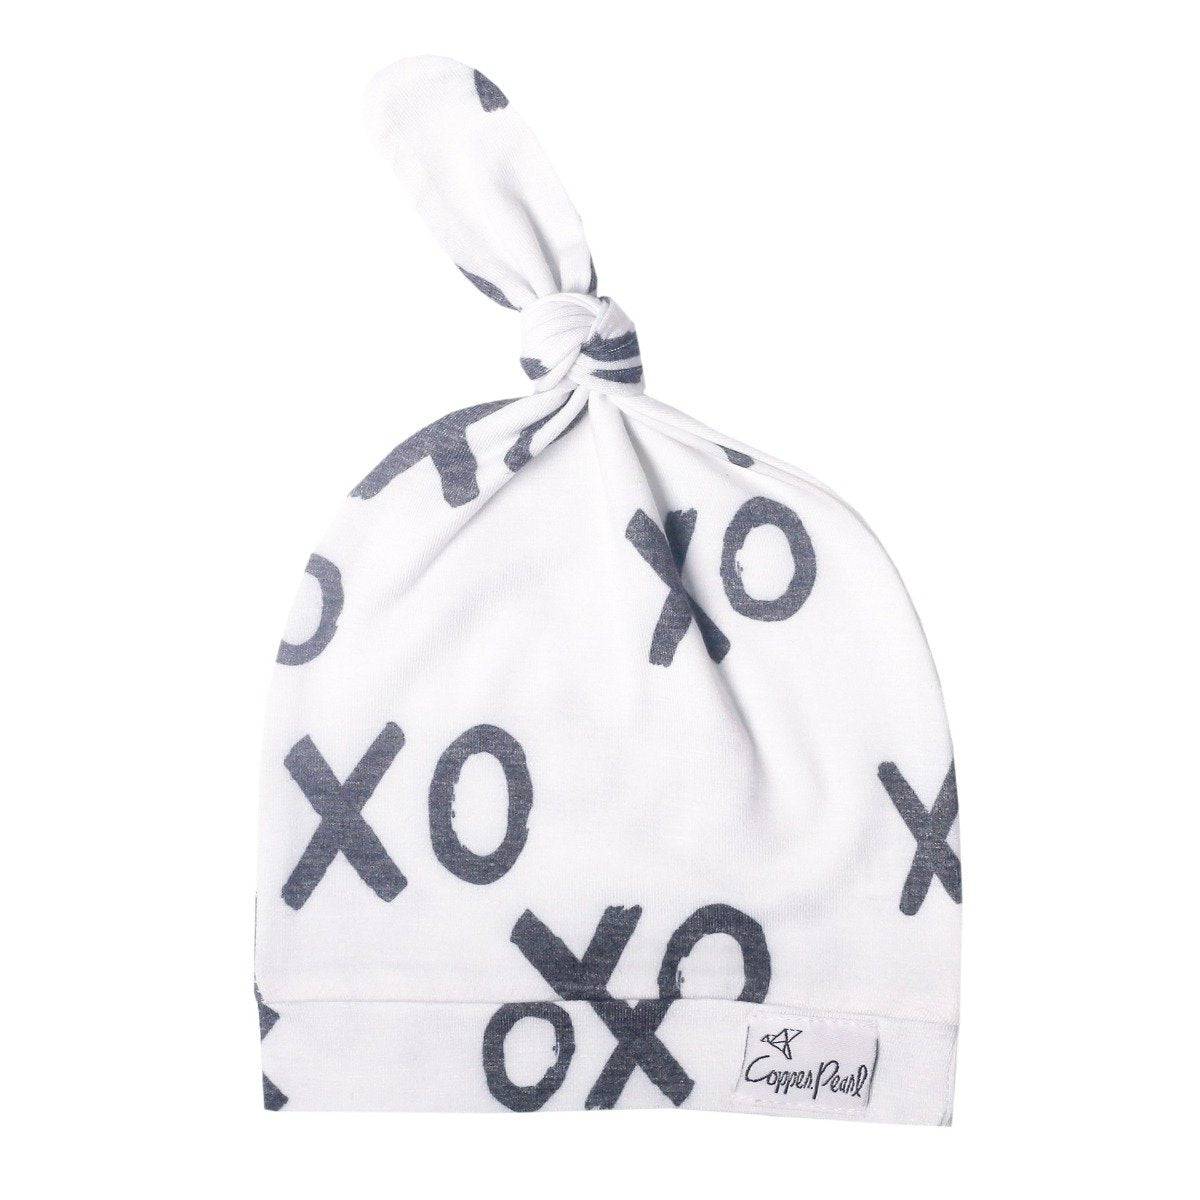 XOXO Top Knot Hat - Twinkle Twinkle Little One